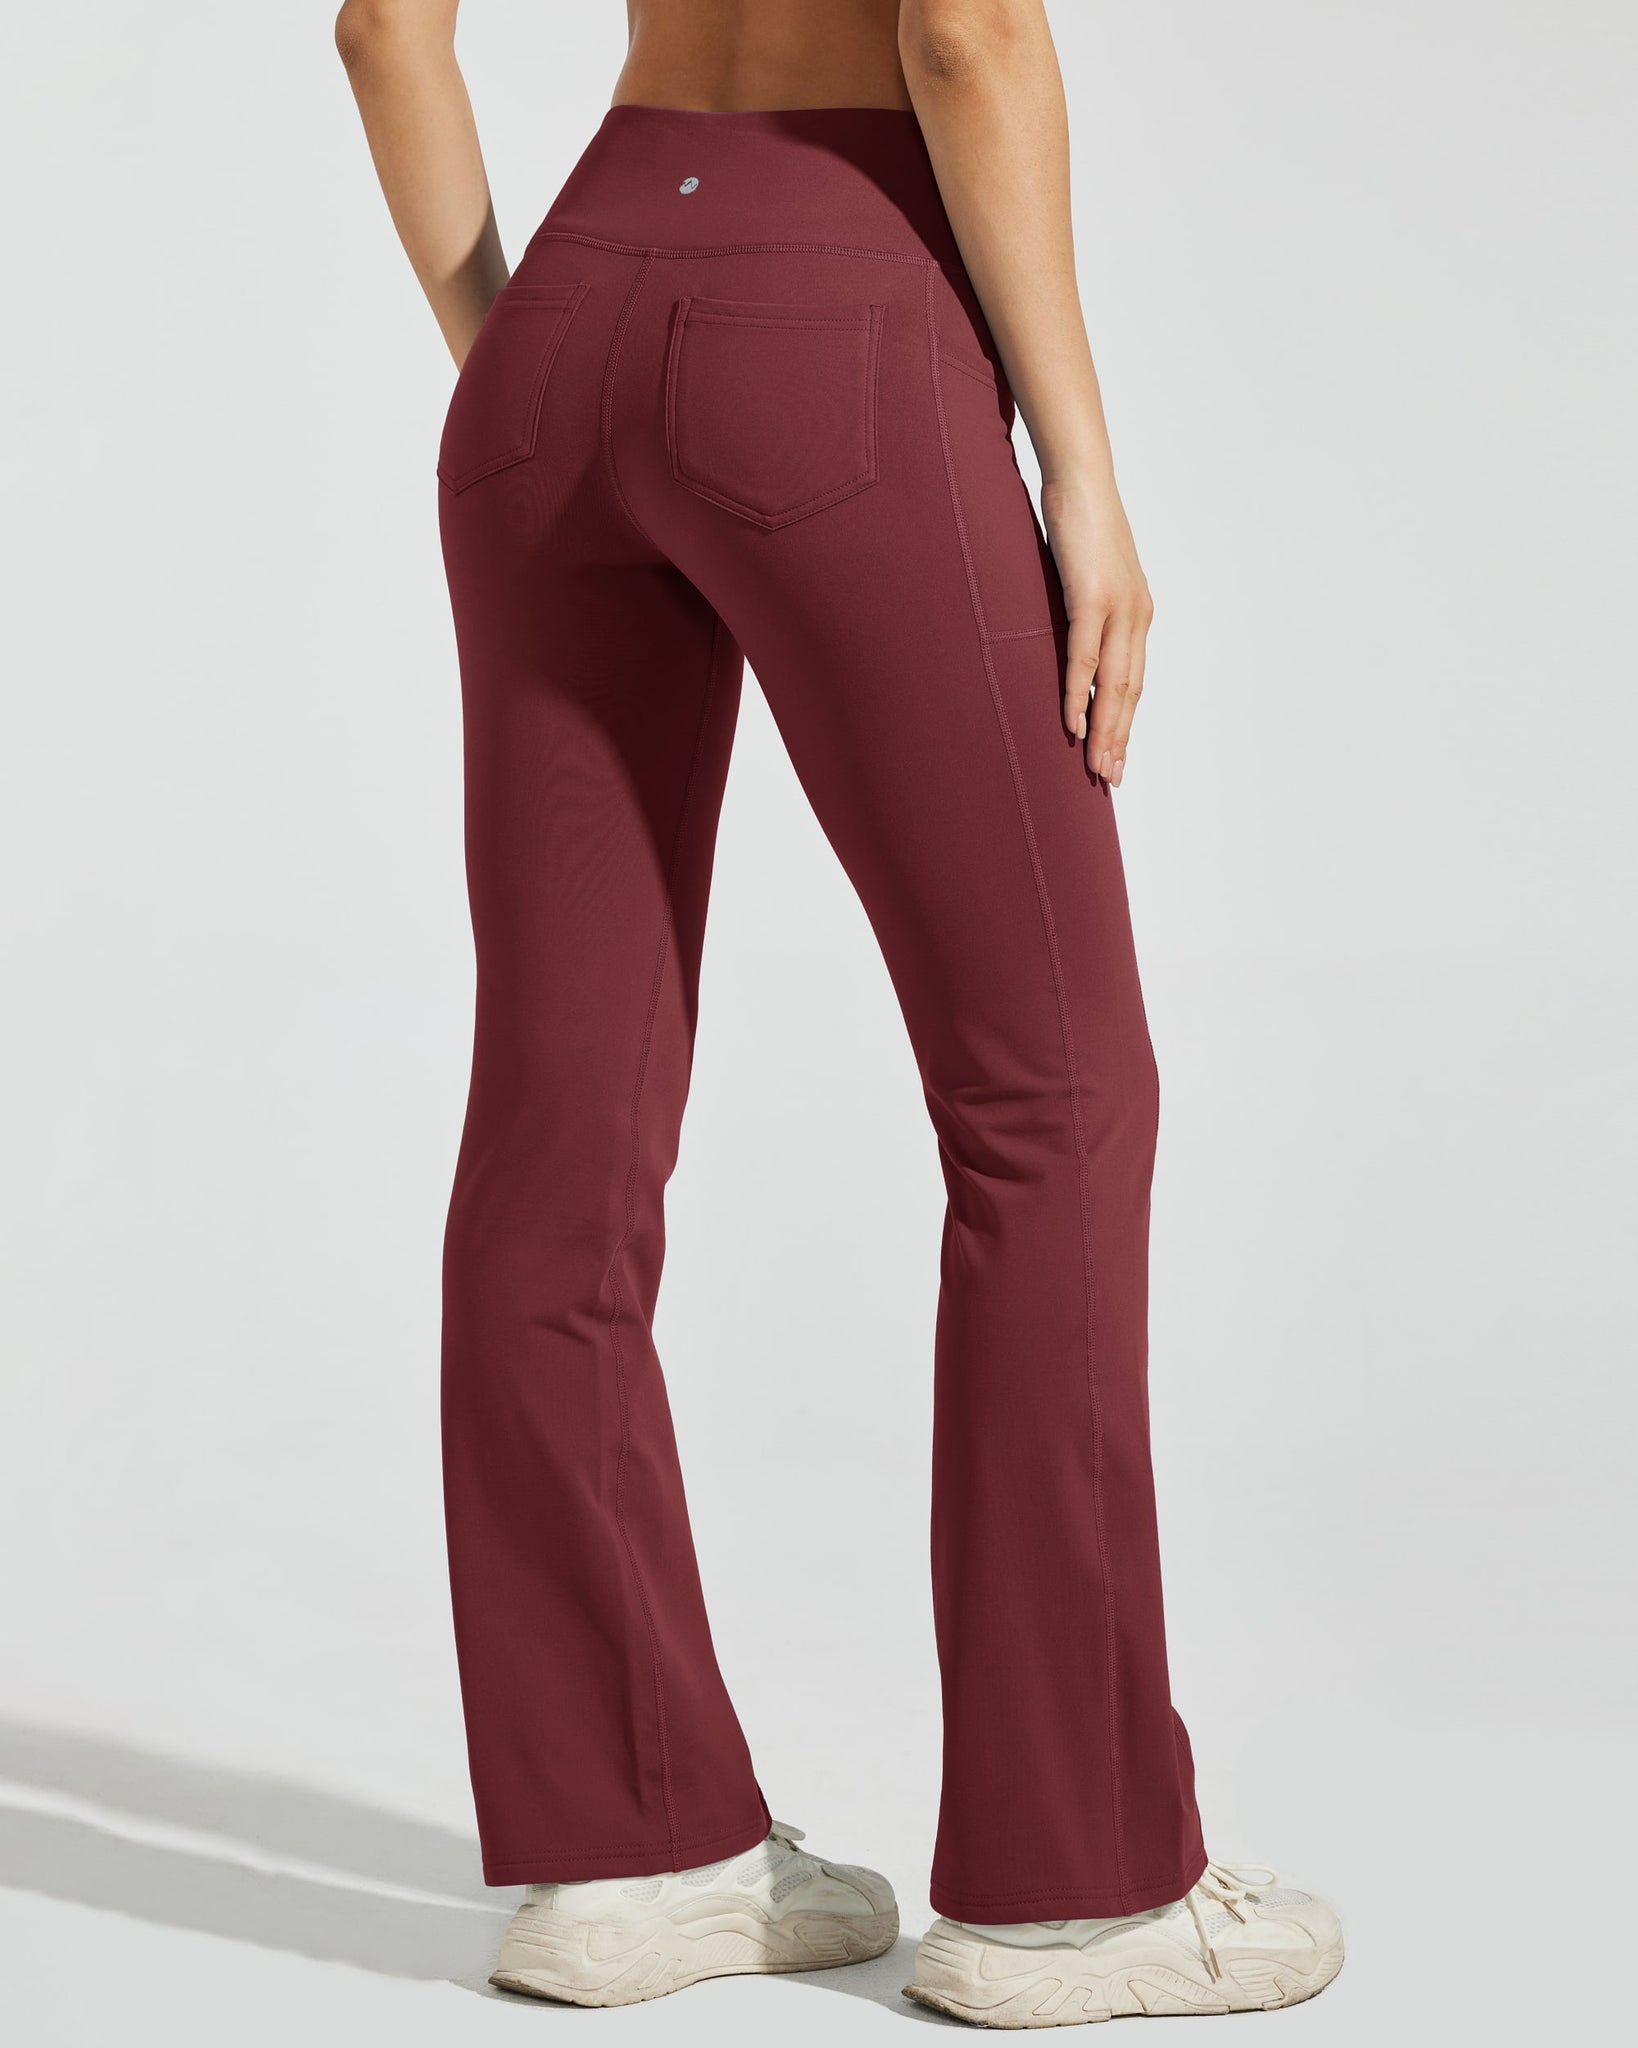 Women's Fleece Lined Bootcut Yoga Pants_WineRed_model4